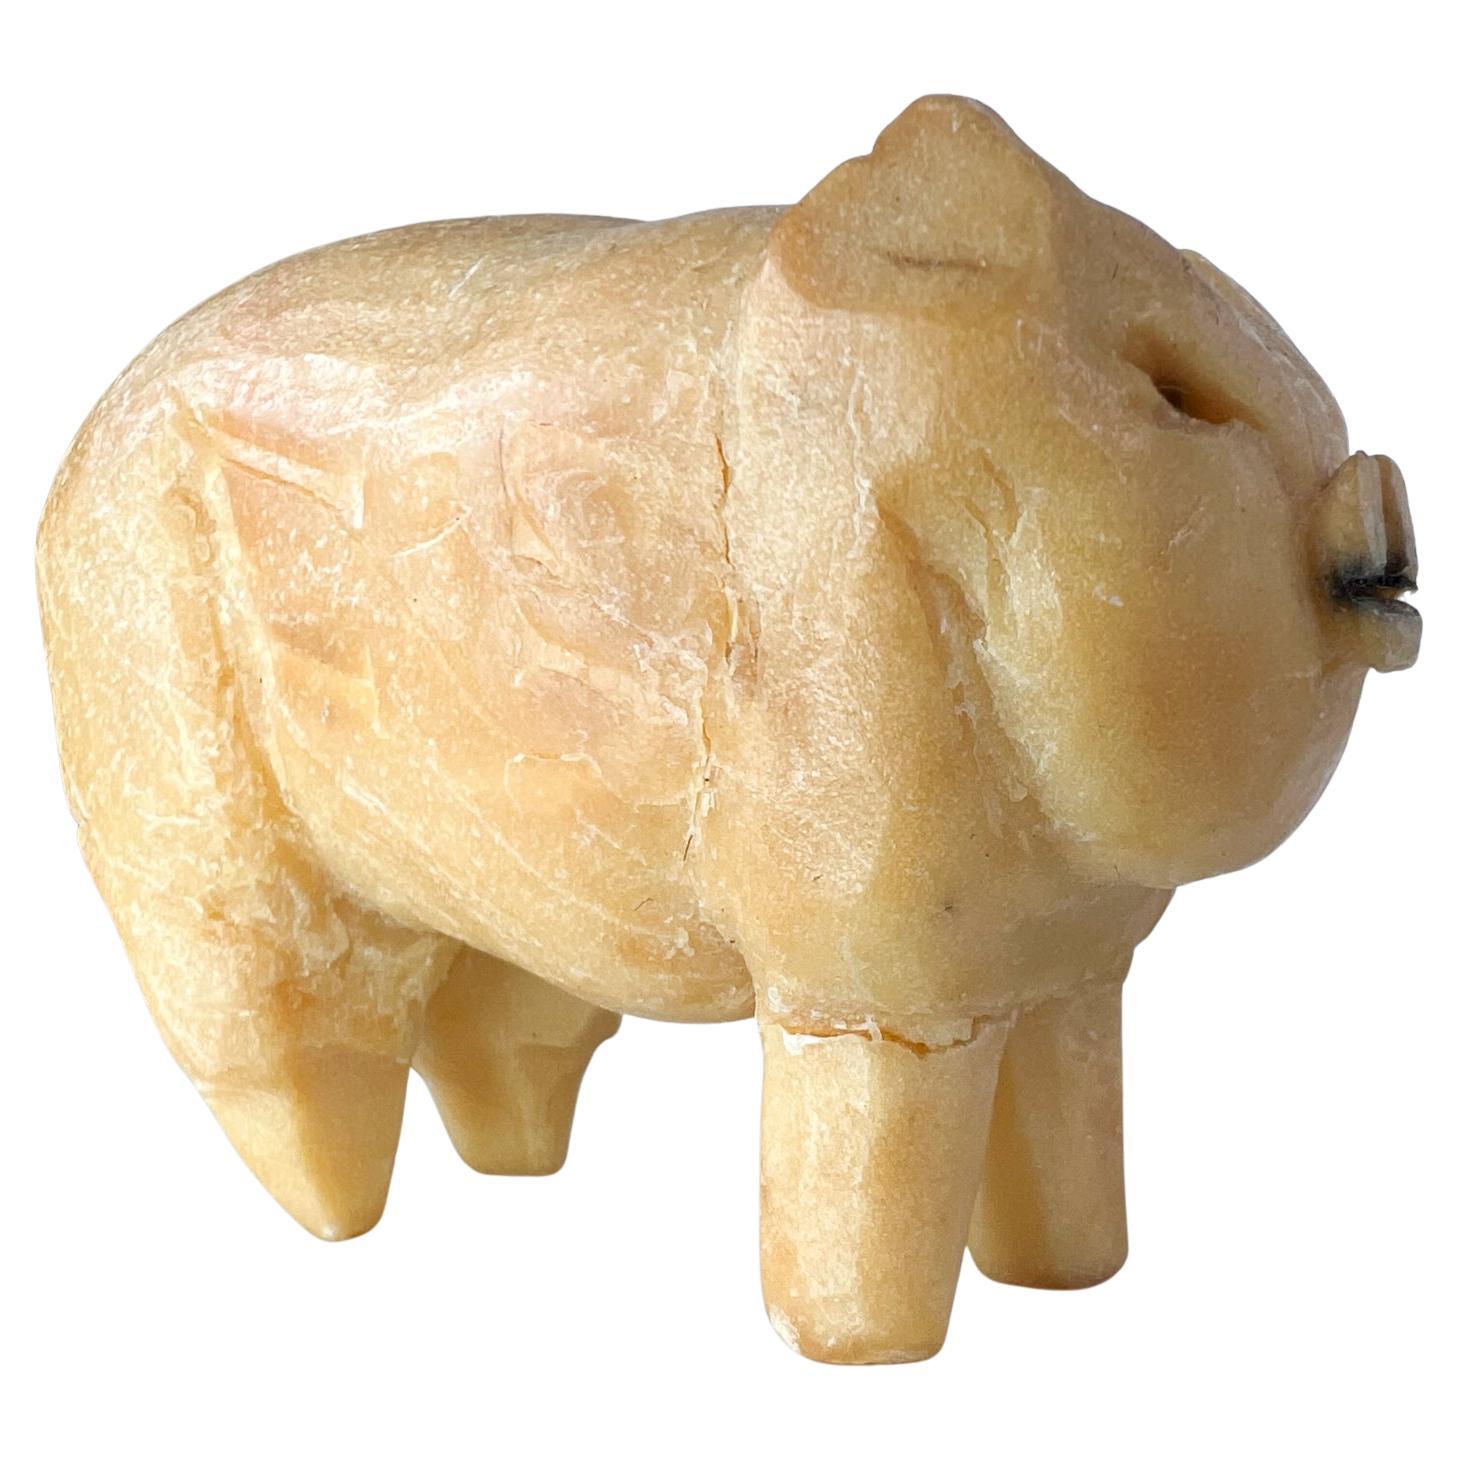 1940s Folk Art Modern Vintage PIG Castile soap sculpture carving presents with fractured leg.
2,75 l x 2,13 h x 1,38 p
Condition vintage d'occasion non restaurée, dommage à la jambe présent.
Une petite fracture présente.
Voir toutes les images